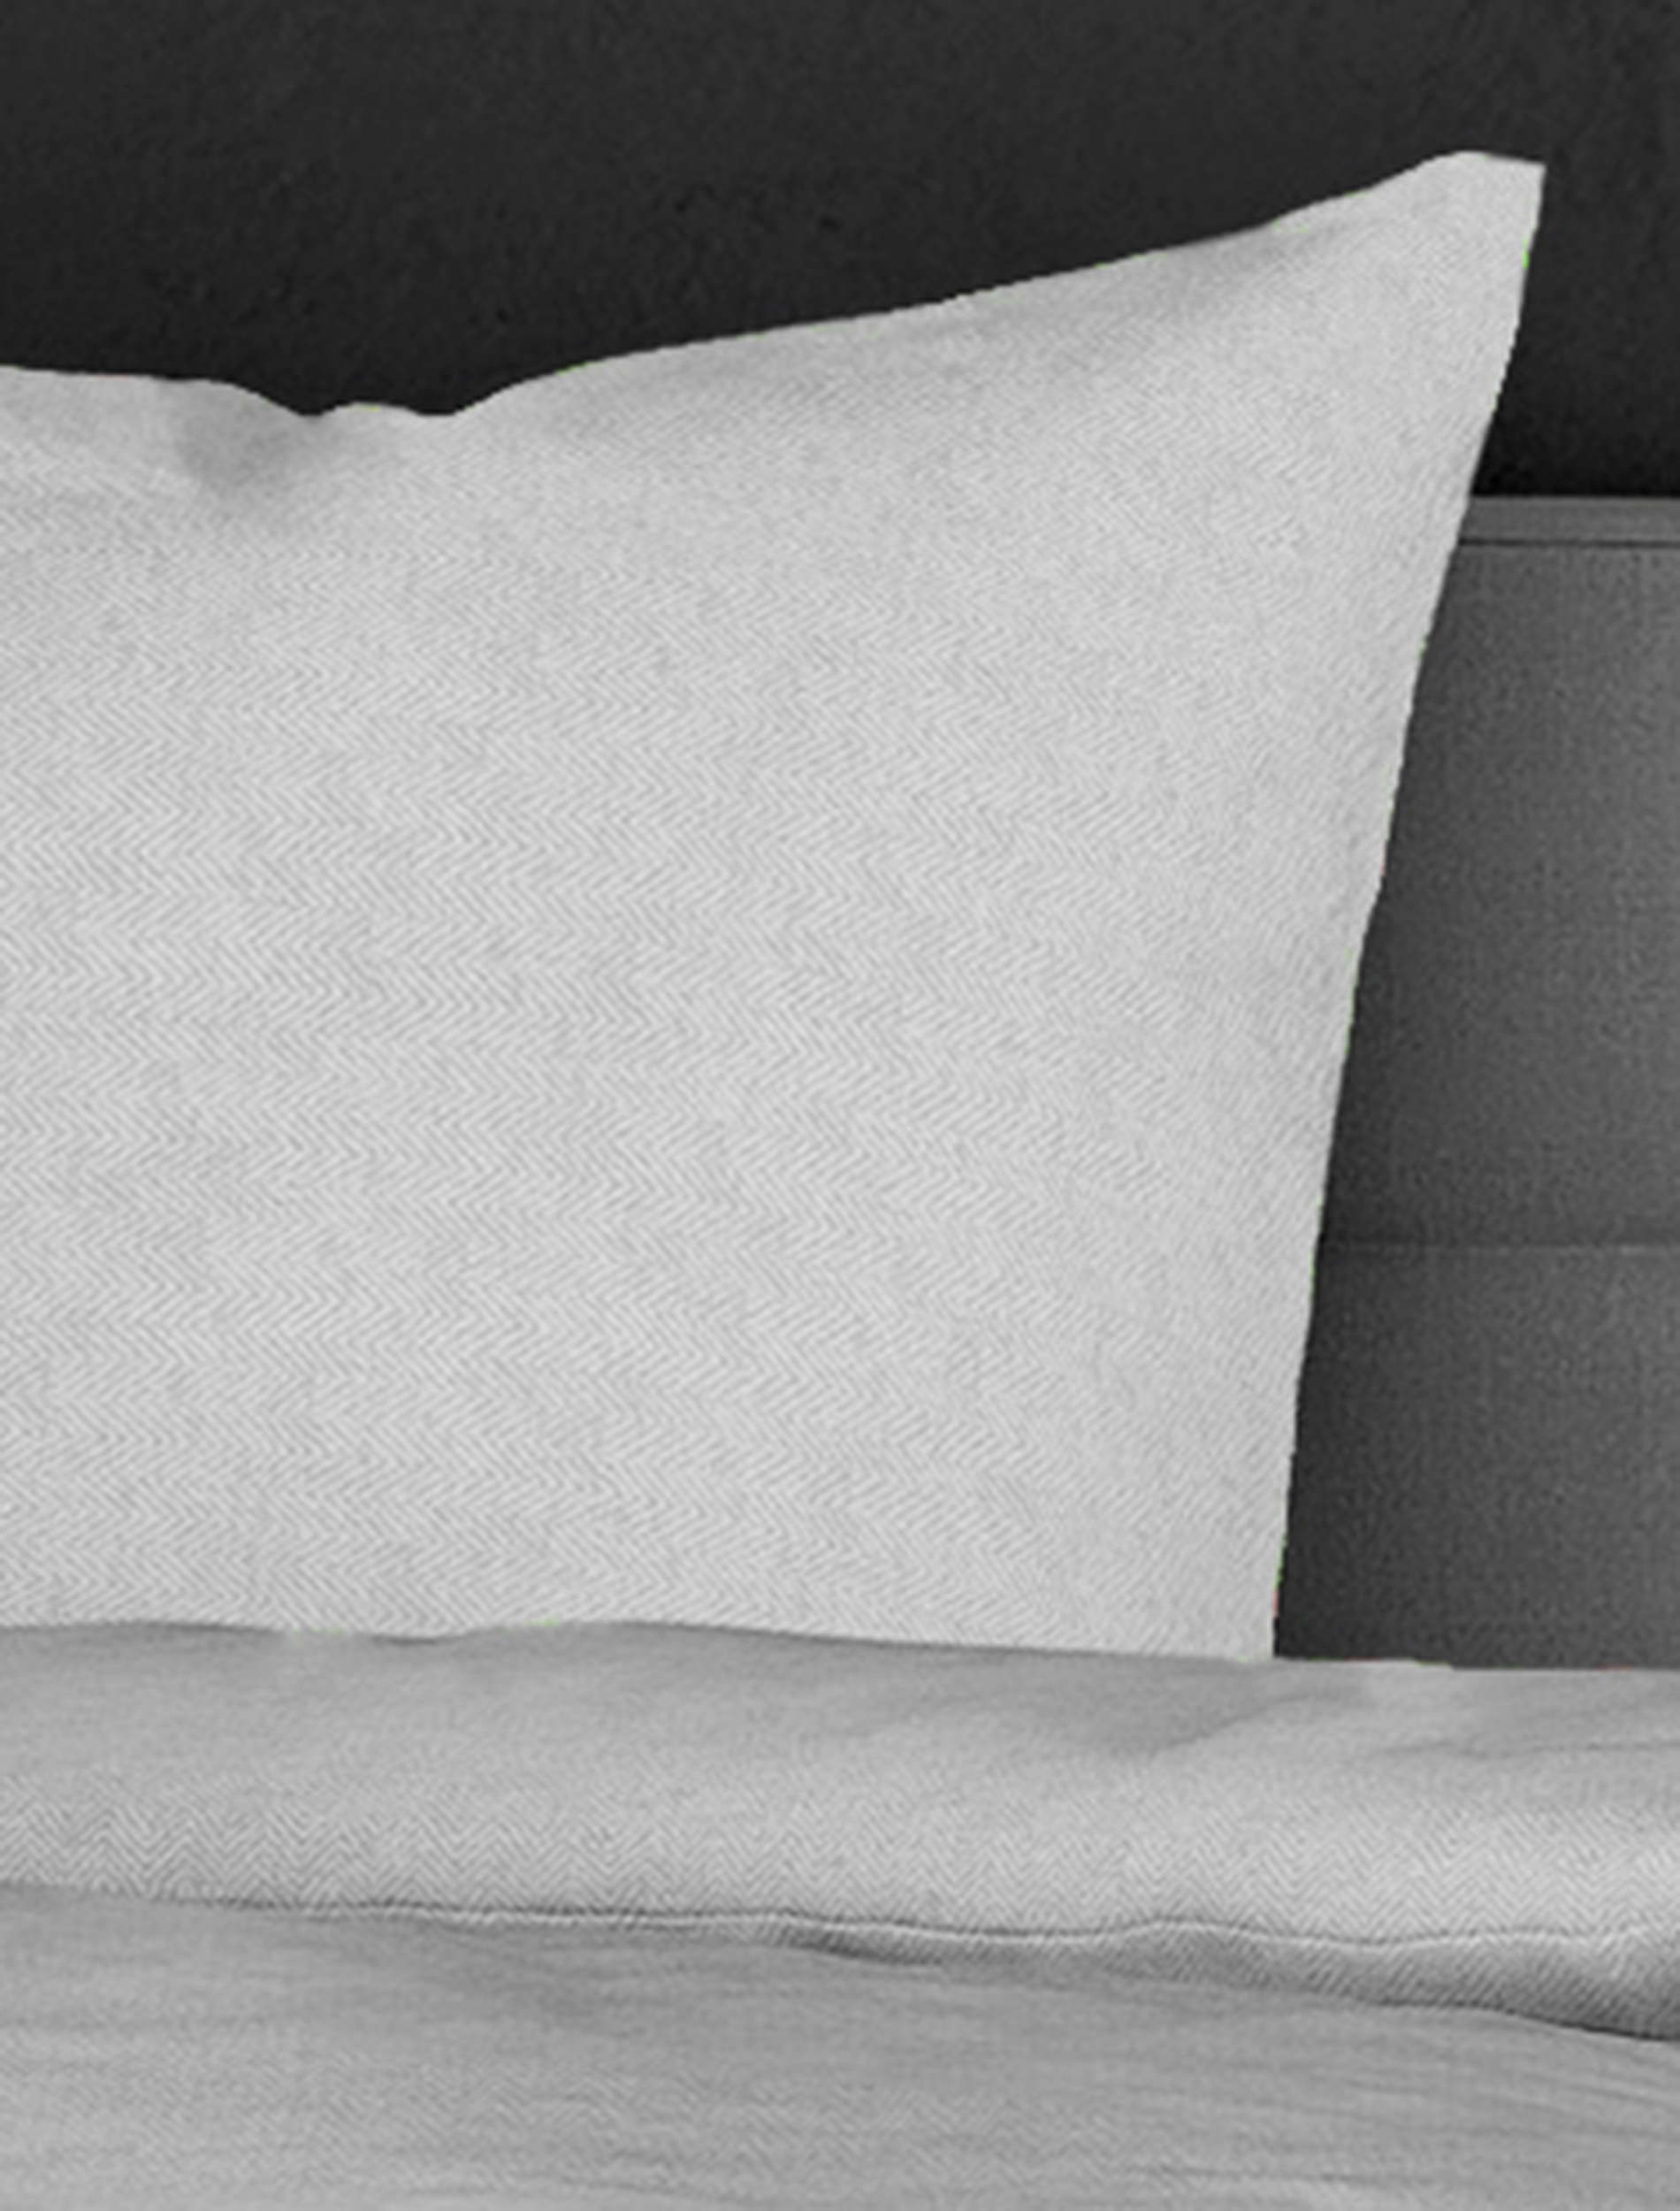 BIERBAUM Bettwäsche »Senci in Mako Satin und Biber (Flanell) Qualität, 100% Baumwolle, Bett- und Kopfkissenbezug mit Reißverschluss, Winter-und Sommerbettwäsche, ganzjährig einsetzbar«, (2 tlg.), pflegeleicht